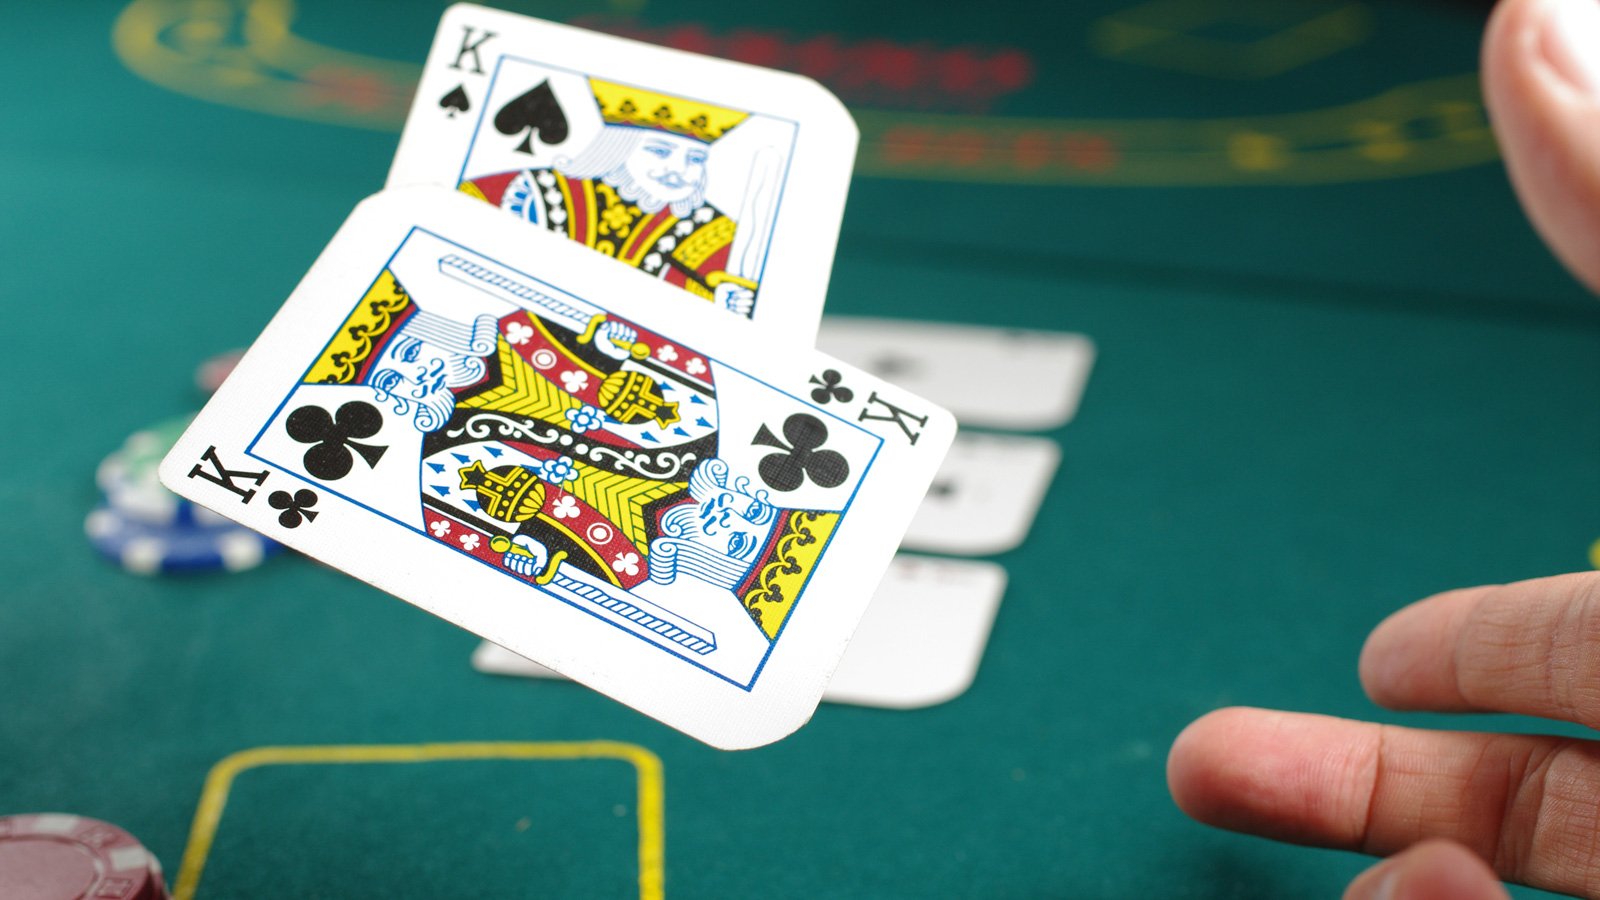 Finden Sie jetzt heraus, was Sie für schnelles Online Casino legal tun sollten.